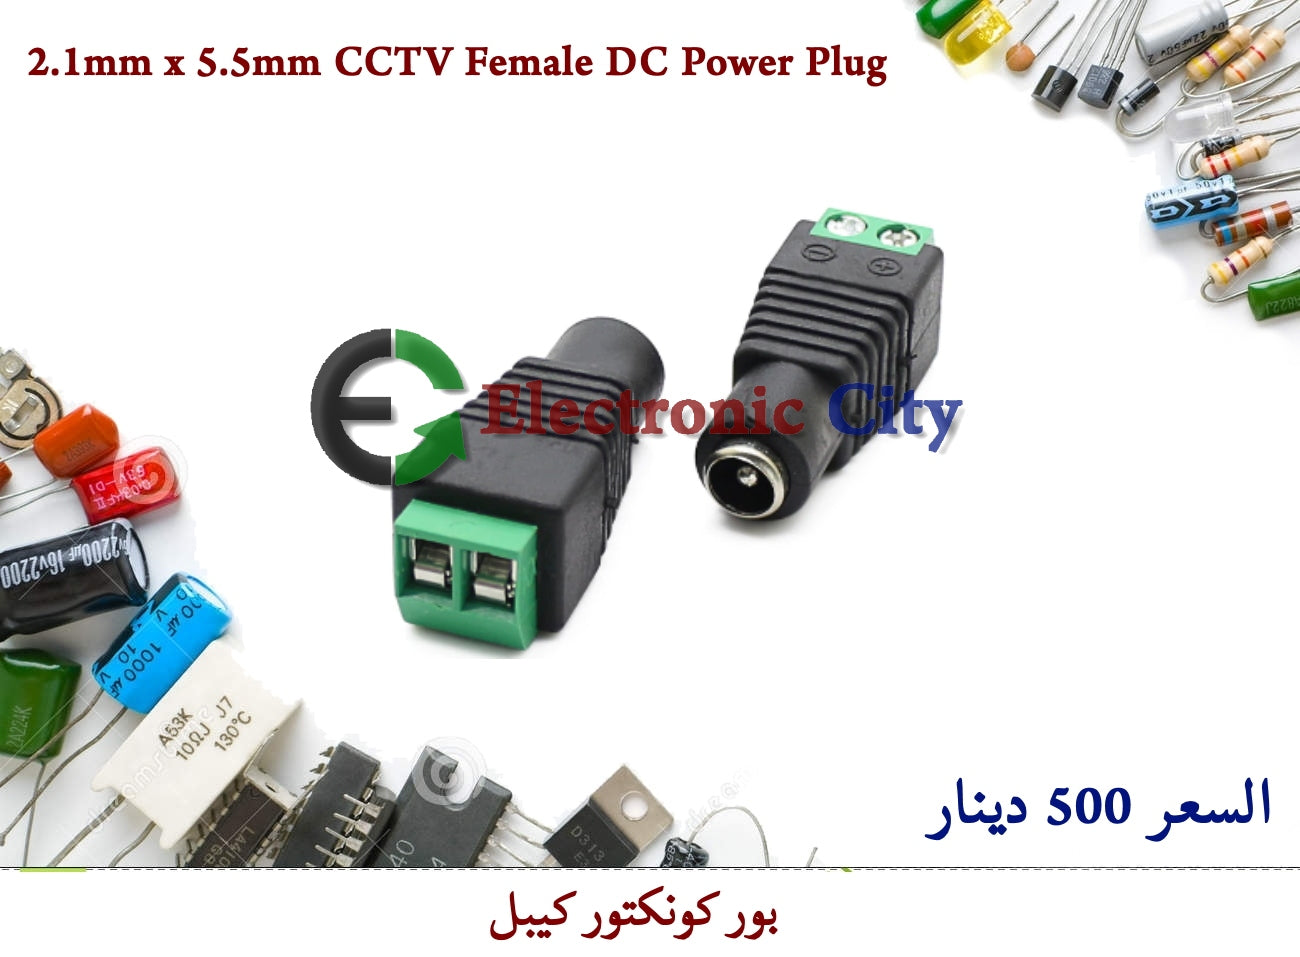 2.1mm x 5.5mm CCTV Female DC Power Plug